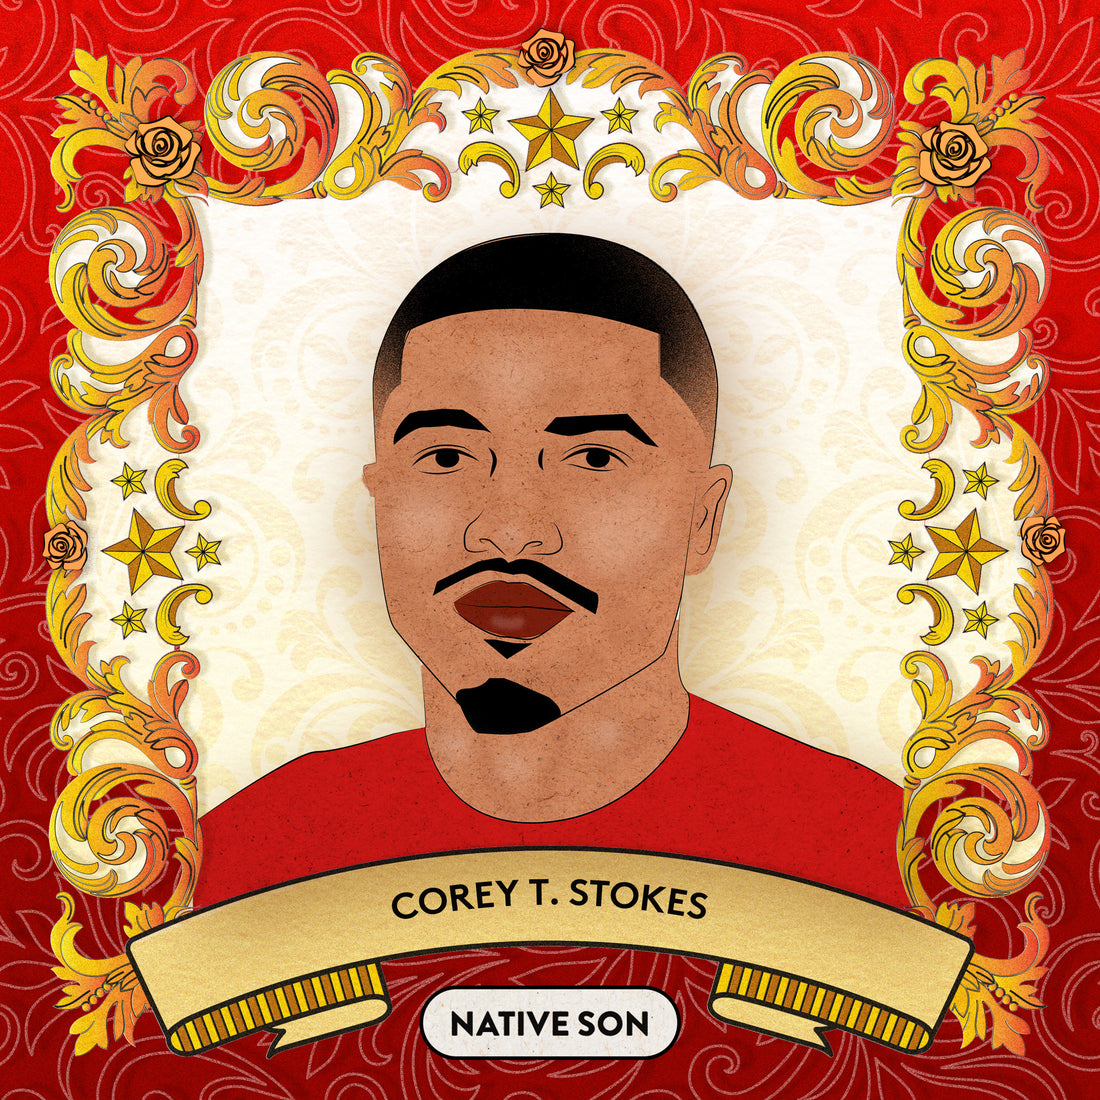 COREY T. STOKES